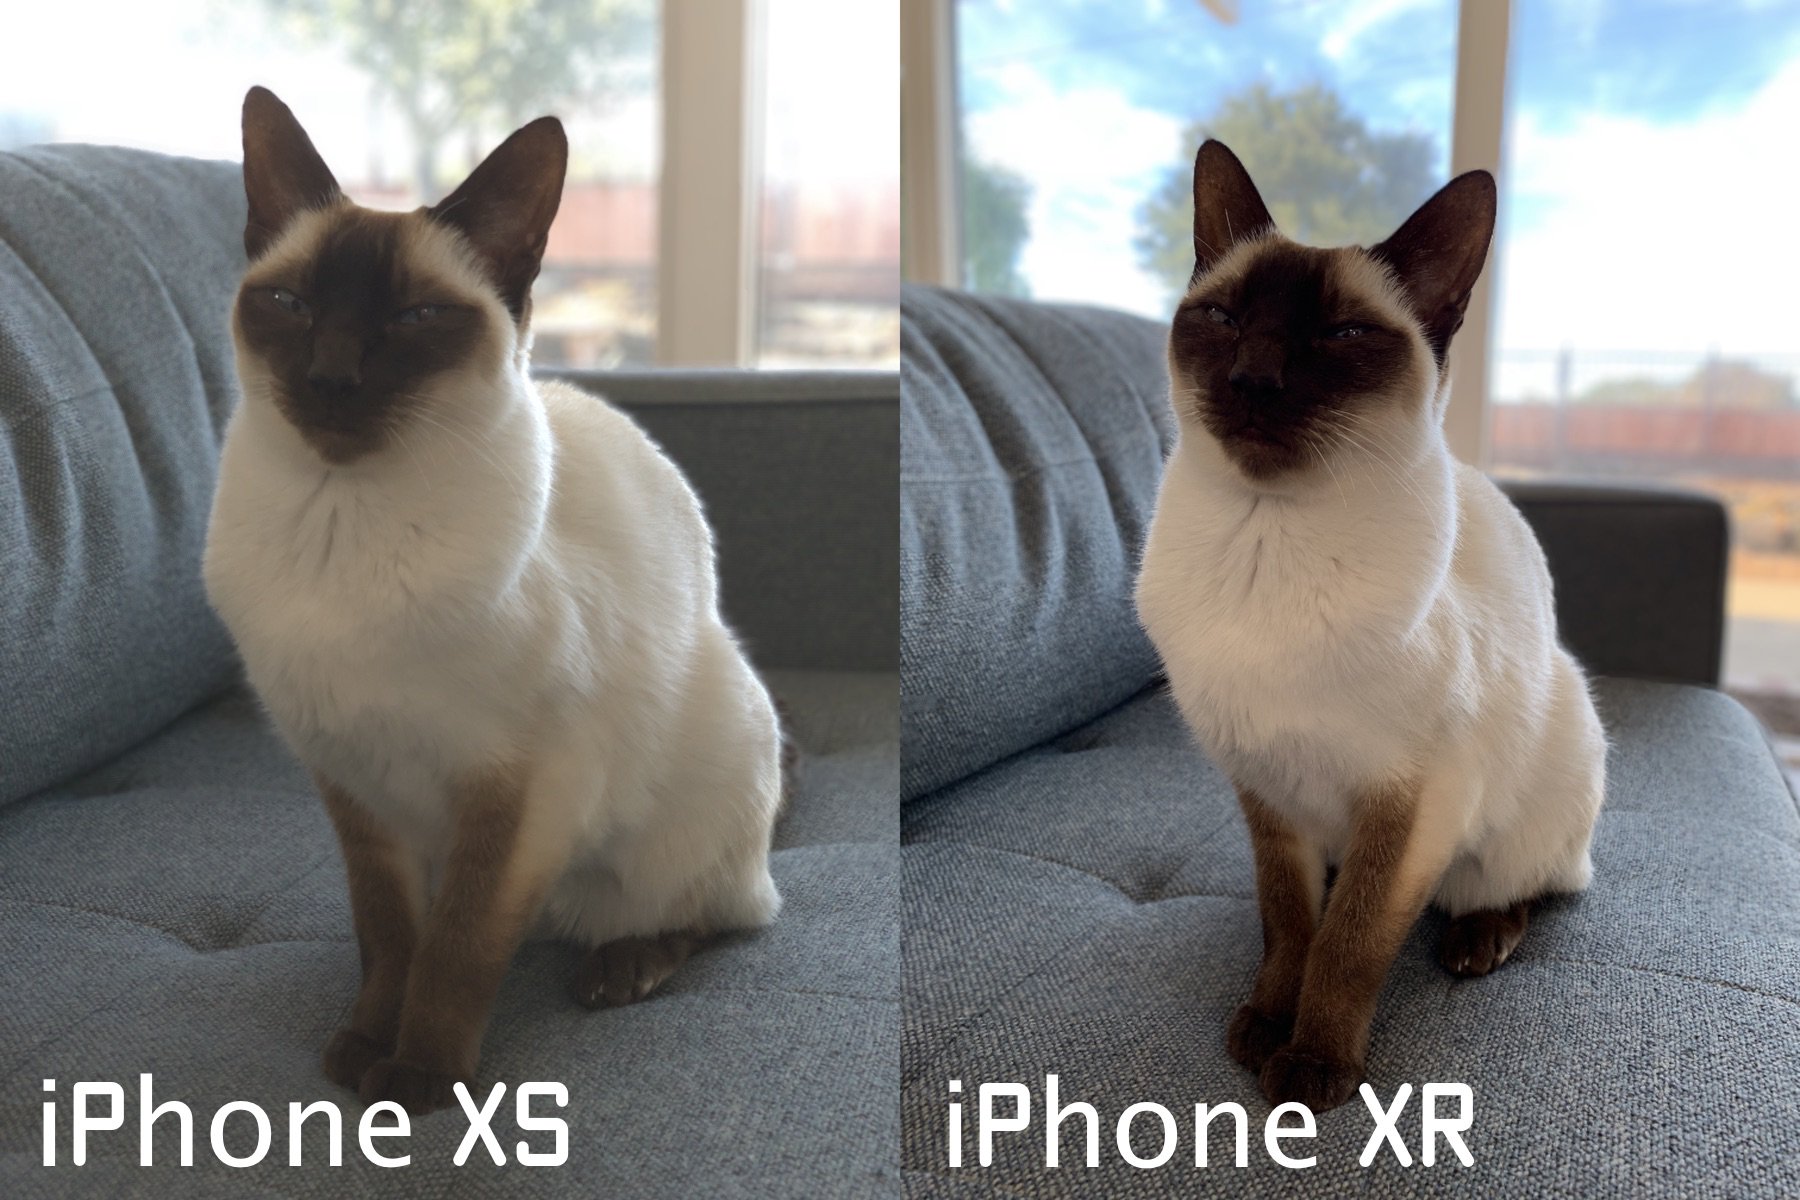 Iphone Xrの弱点解消 ペットやモノの背景ぼかし アプリ開発者が独自ポートレートモードを予告